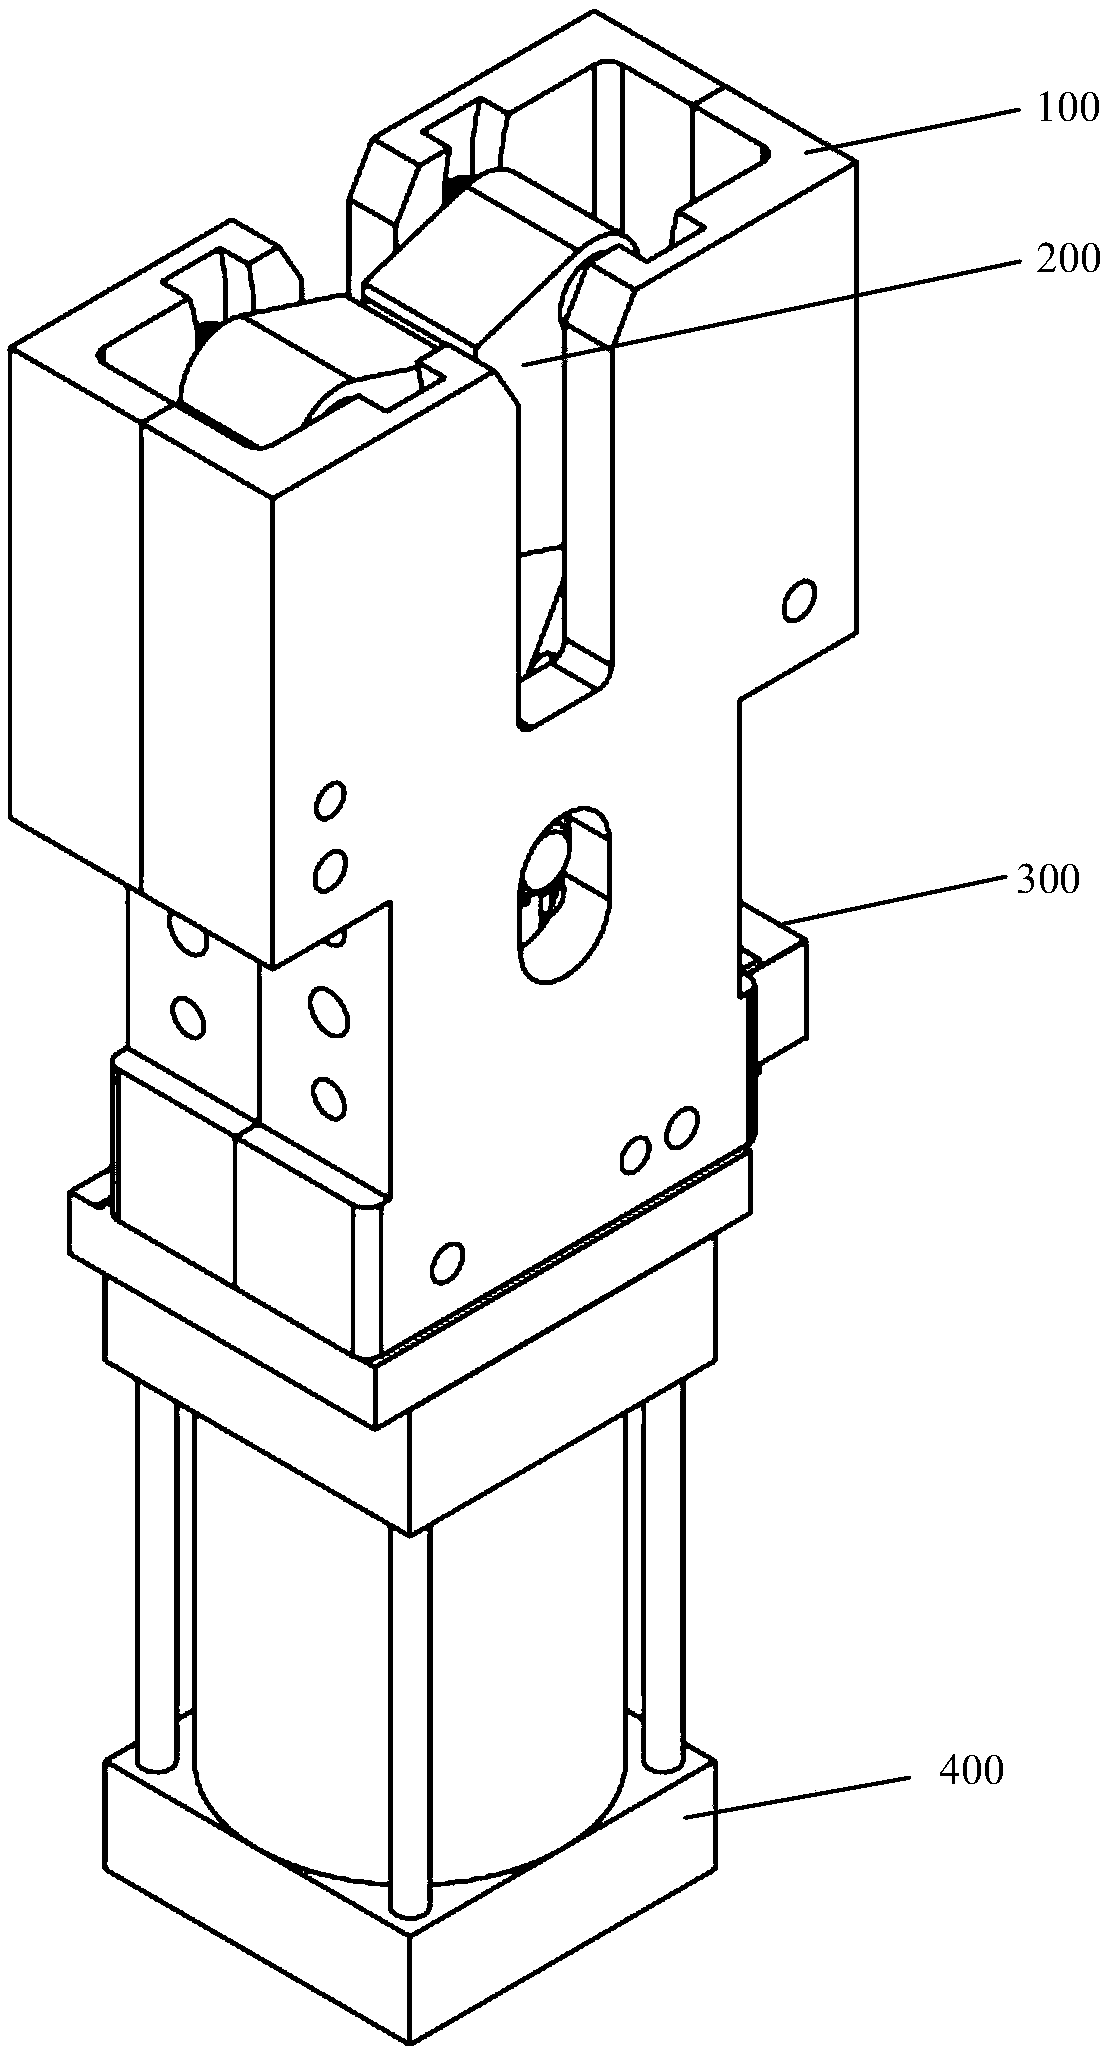 Plate shearing sliding groove type robot griper